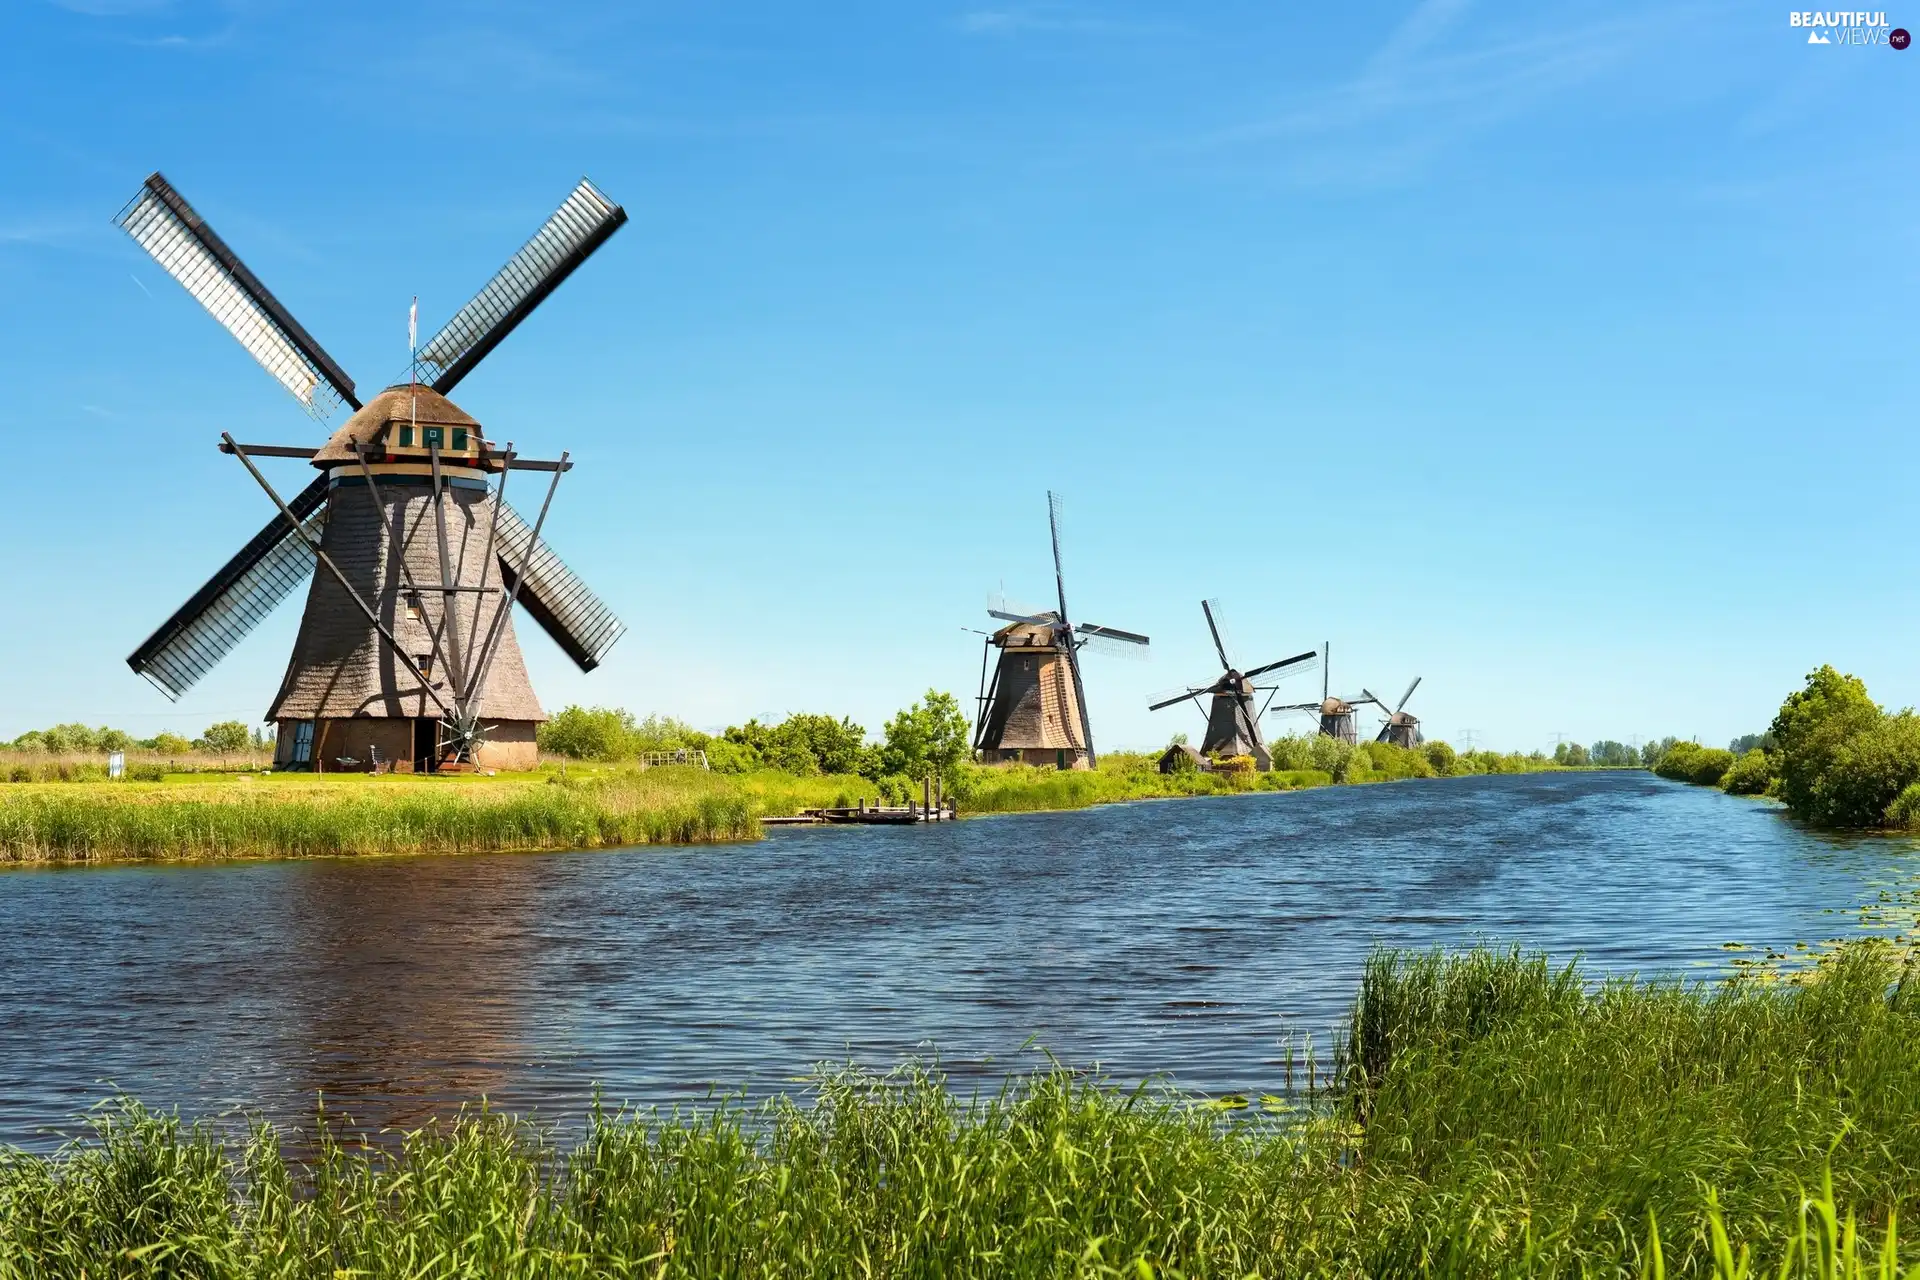 grass, Windmills, River